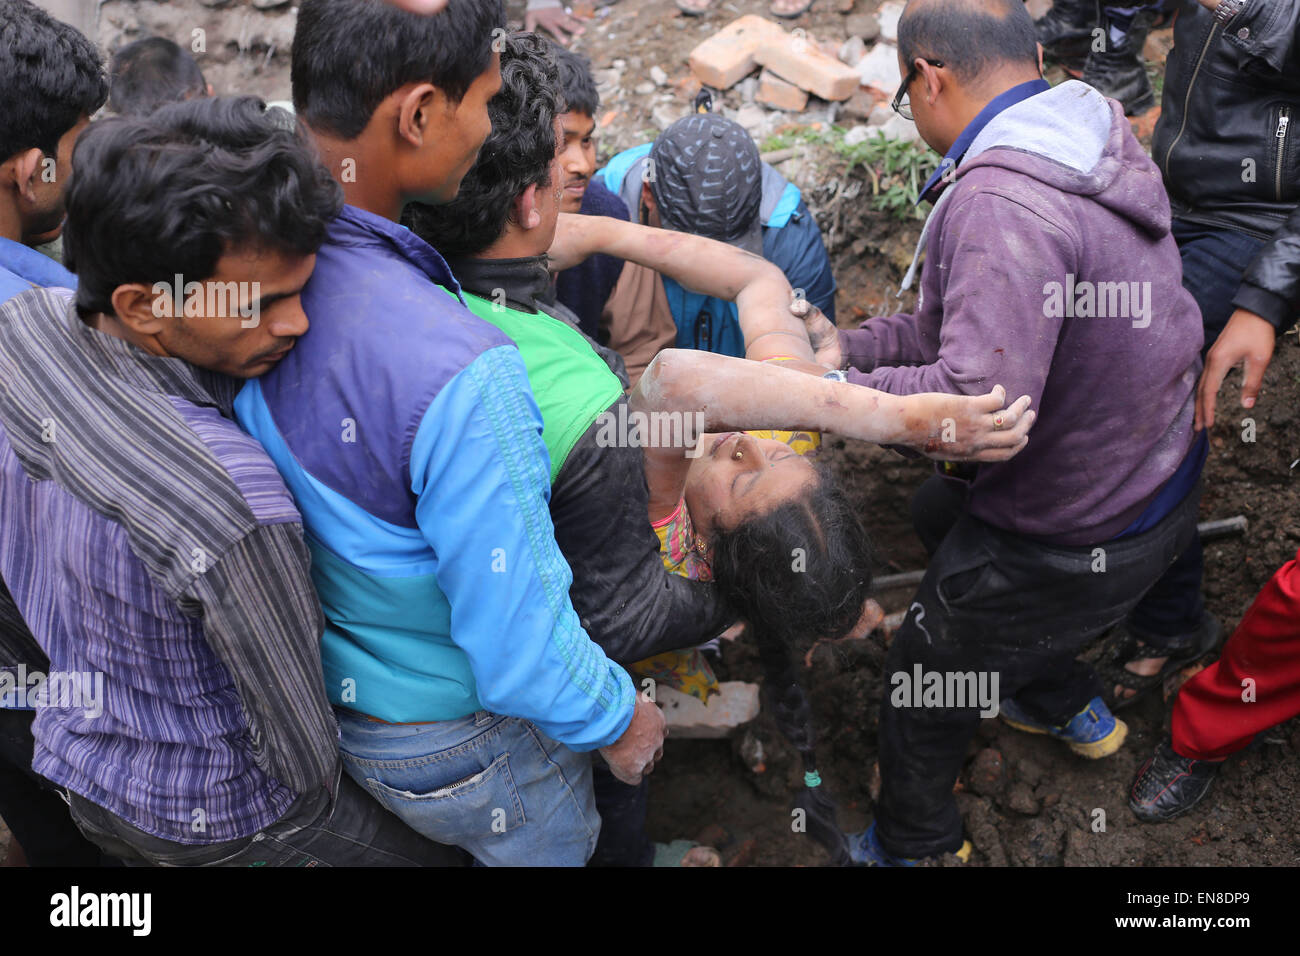 Katmandú, Nepal. 25 abr, 2015. Los trabajadores de rescate encontrar supervivientes. El número de muertes causadas por el terremoto de magnitud 7.8 en Nepal está en 3,726 y va en aumento. Miles de sobrevivientes han pasado una segunda noche sin abrigo. Además del temor provocado por numerosas réplicas, Gente acampando en espacios abiertos sufren una combinación de lluvia, hambre y sed. El gobierno dijo que unas 6.500 personas resultaron heridas en el terremoto que azotó el sábado. Crédito: Mukunda Bogati/Cable/ZUMA ZUMAPRESS.com/Alamy Live News Foto de stock